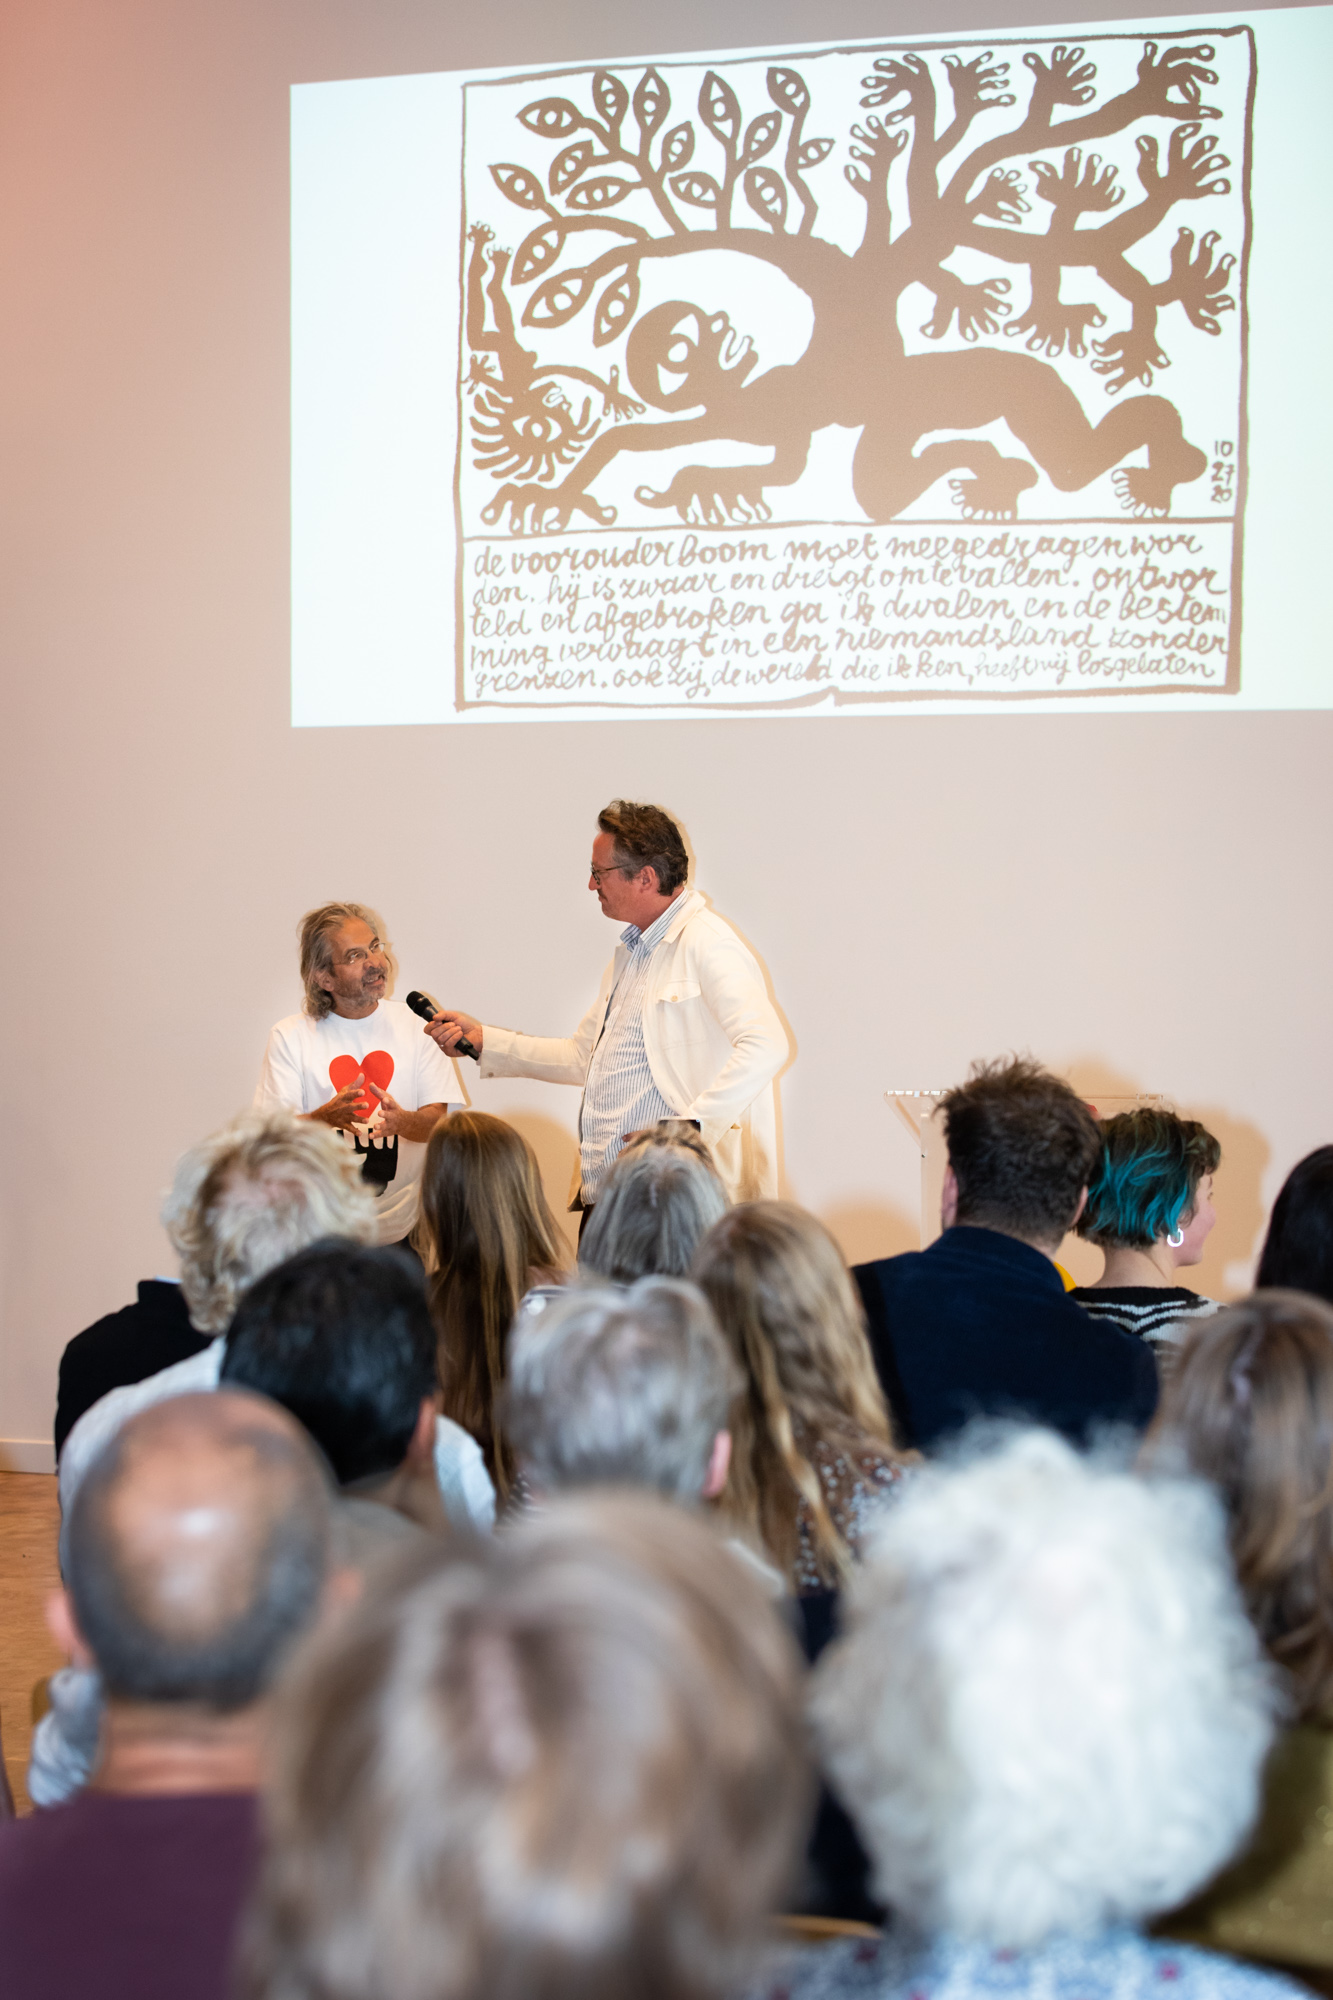 overzichtsfoto van Max Kisman die wordt geïnterviewd door Bart Rutten met op de voorgrond publiek en op de achtergrond een afbeelding van zijn plan